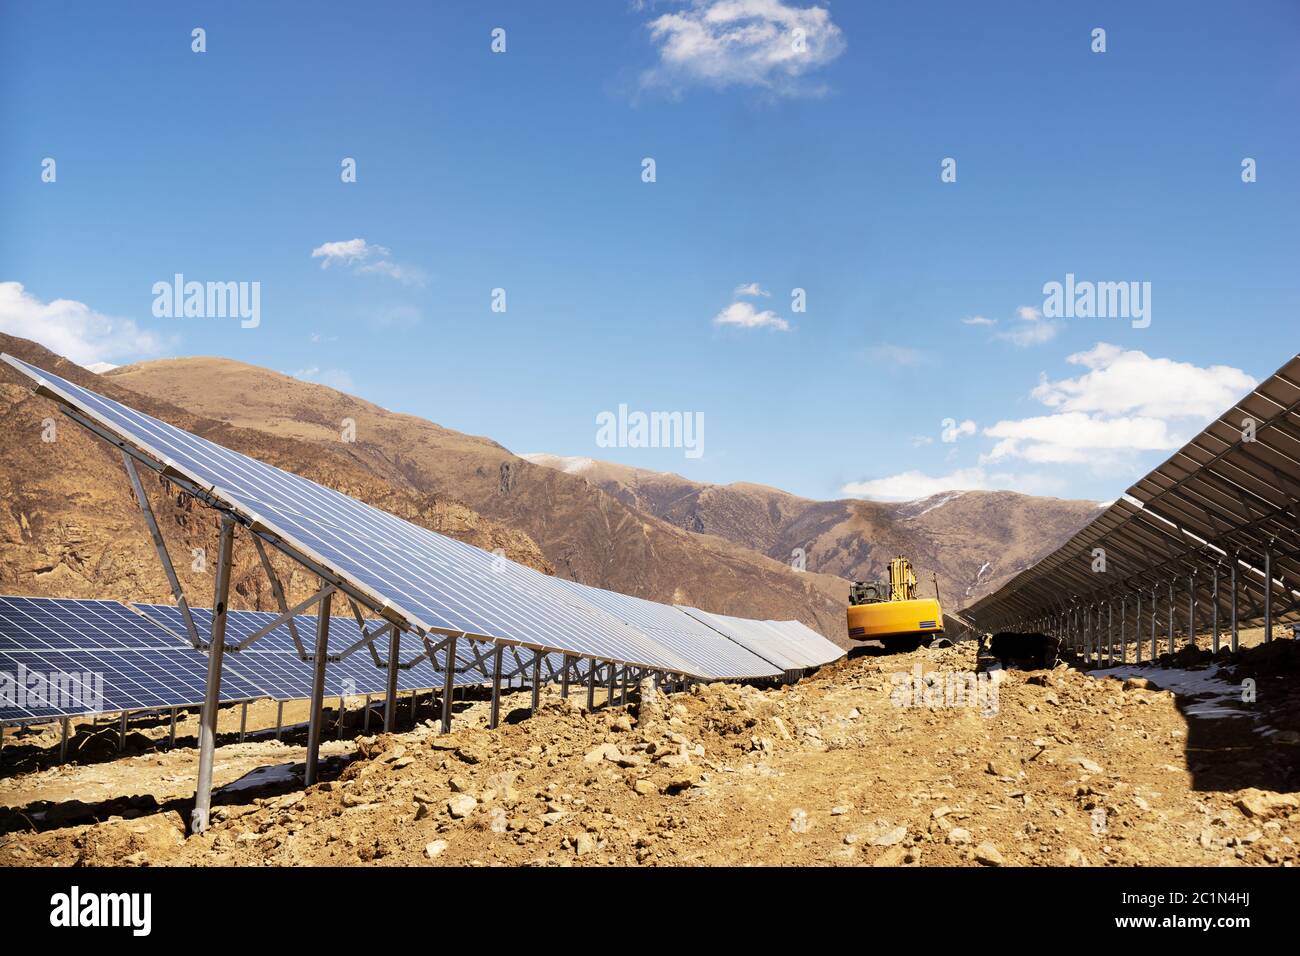 Panel solar, fotovoltaica, electricidad fuente alternativa - concepto de recursos sostenibles Foto de stock